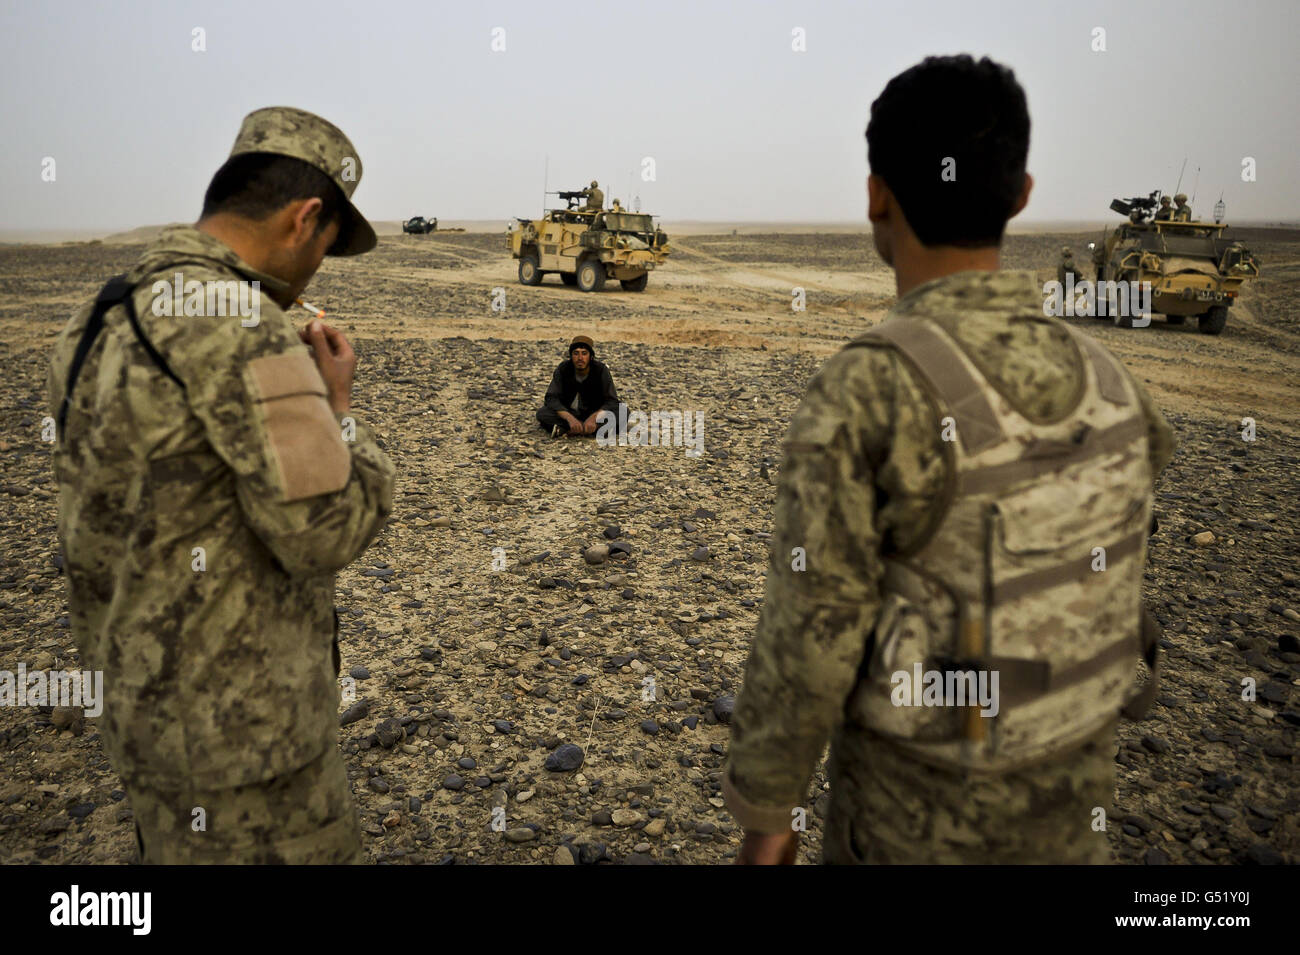 Afghanistan National Order Civil Police (ANCOP) wacht über afghanische Staatsangehörige, während sie sitzen und warten auf die Bestätigung der Identität durch ISAF-Kräfte im Yakhchal-Gebiet der Provinz Helmand gegen Ende des zweiten Tages der Operation "Now Roz" (New Day in in Dari), Die Afghan National Security Force (ANSF) befreit die Taliban aus dem Gereshk-Gebiet der Provinz Helmand, unterstützt und betreut von britischen Truppen, bei der als letzte kombinierte Operation auf Herrick 15 gilt, um die traditionell eine Taliban-Hochburg vom Aufstand zu befreien. Stockfoto